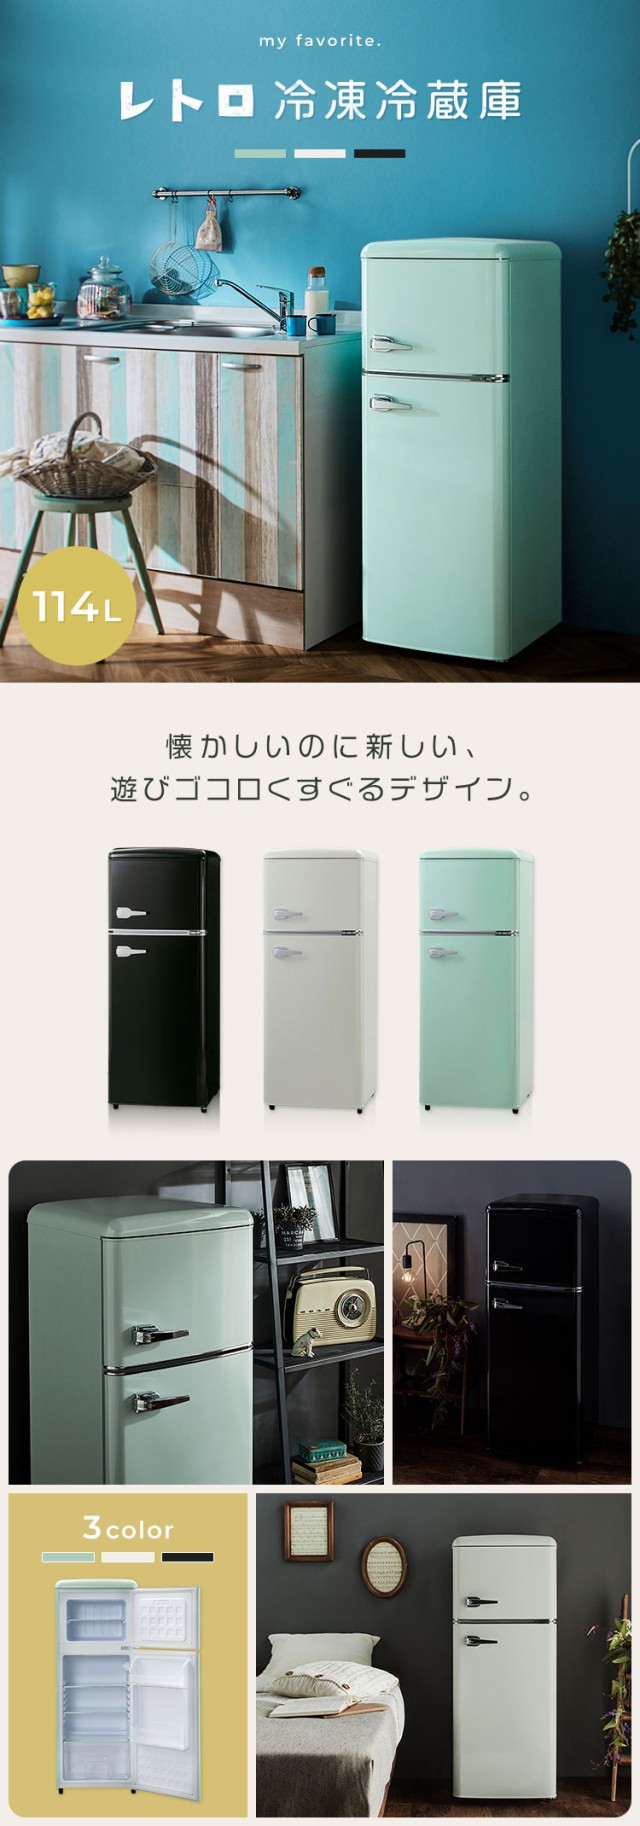 冷蔵庫 114L 冷凍庫 2ドア レトロ冷凍冷蔵庫 PRR-122D おしゃれ